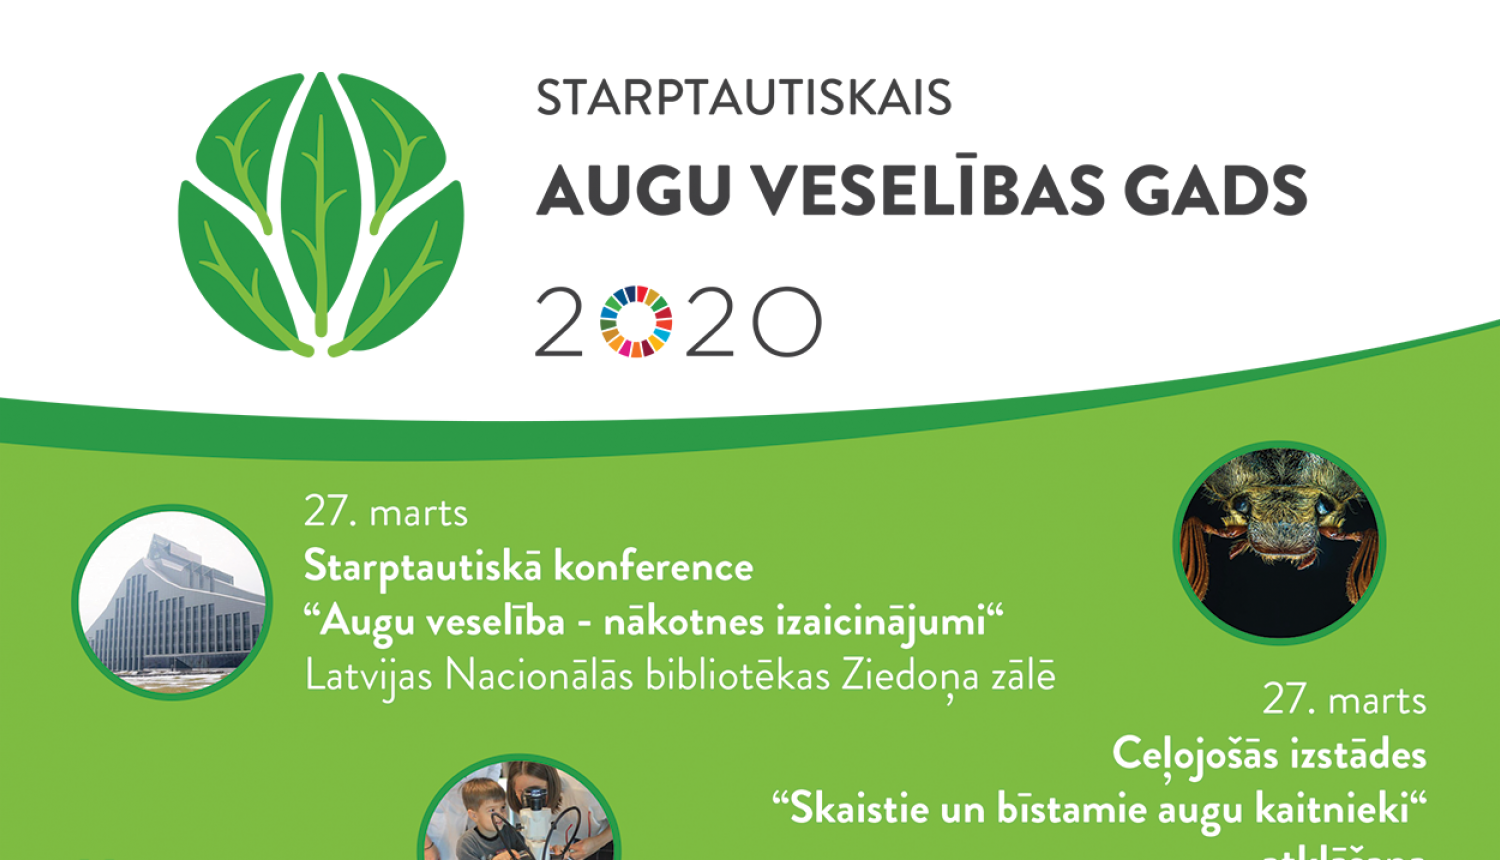 Starptautiskais augu veselības gads - pasākumi Latvijā